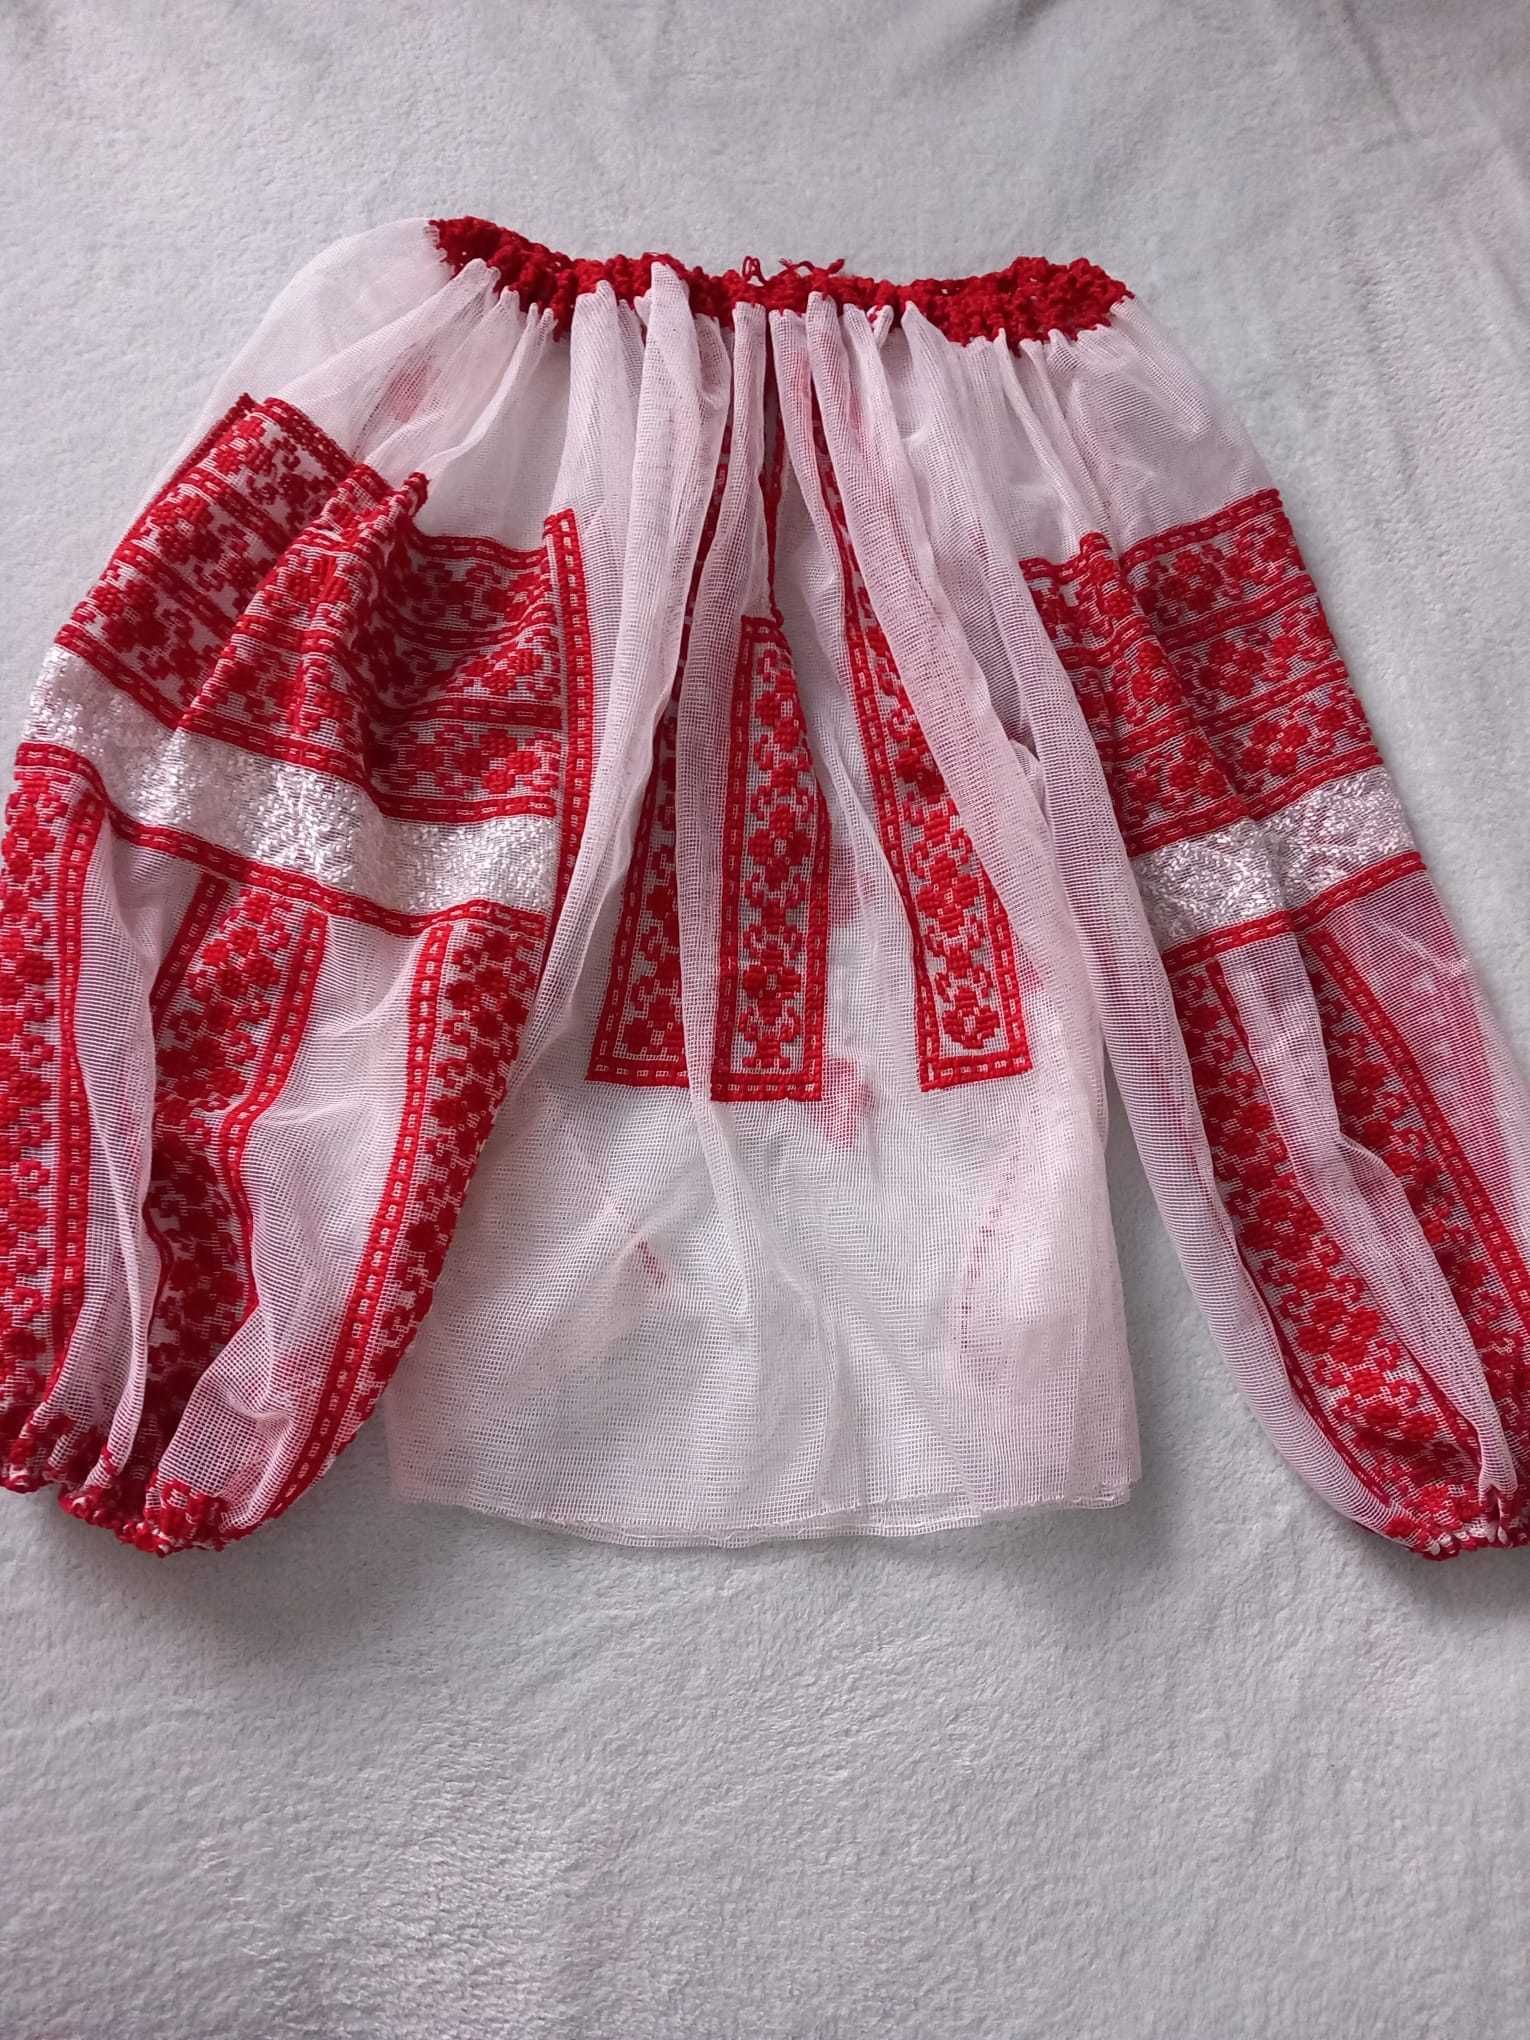 Costum national copii de fete intre 5-8 ani/original, cusut de mana .